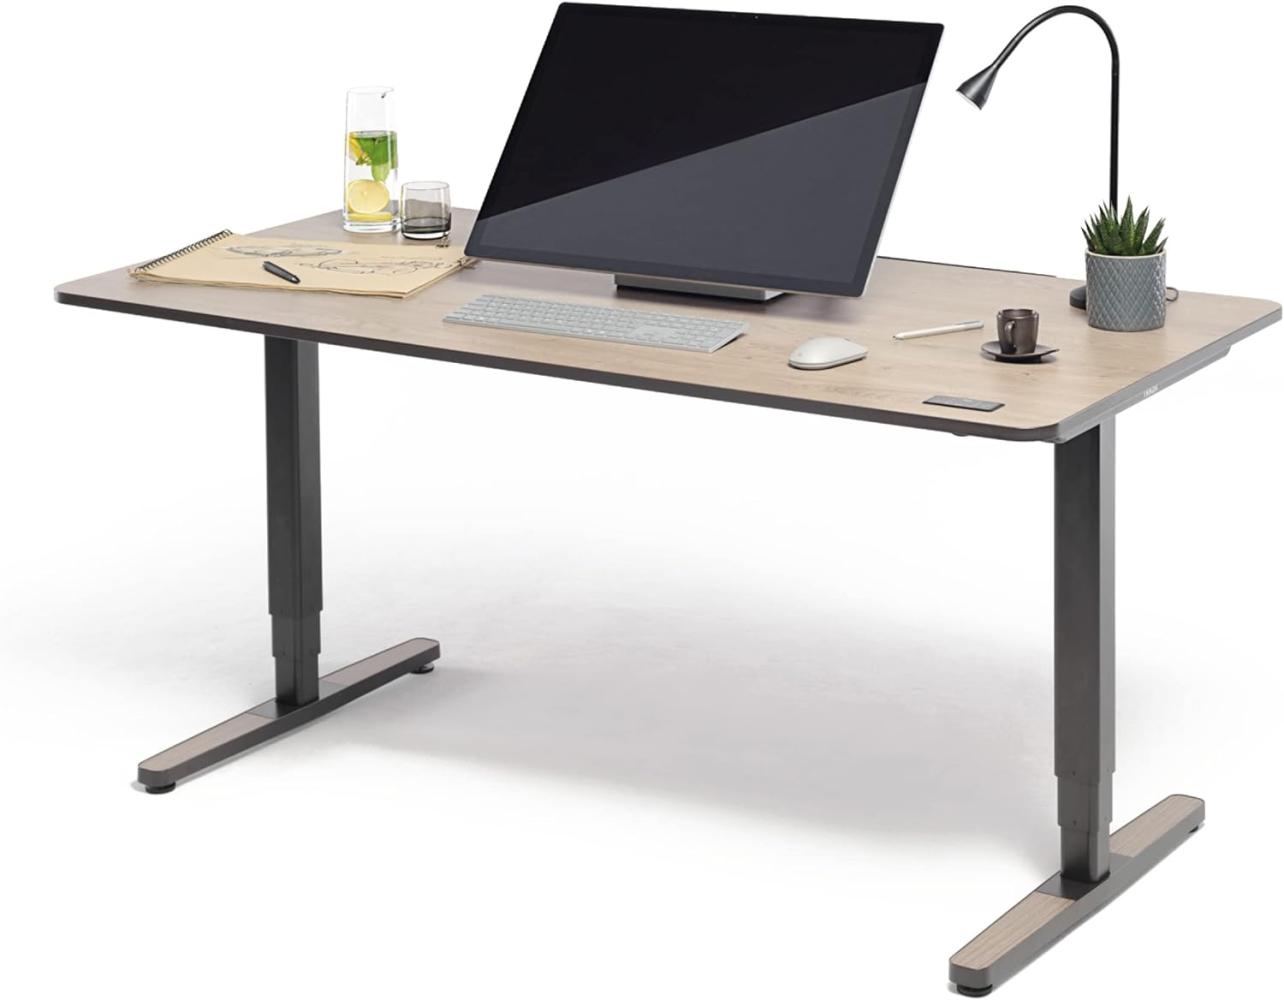 Yaasa Desk Pro II Elektrisch Höhenverstellbarer Schreibtisch, 180 x 80 cm, Eiche, mit Speicherfunktion und Kollisionssensor Bild 1